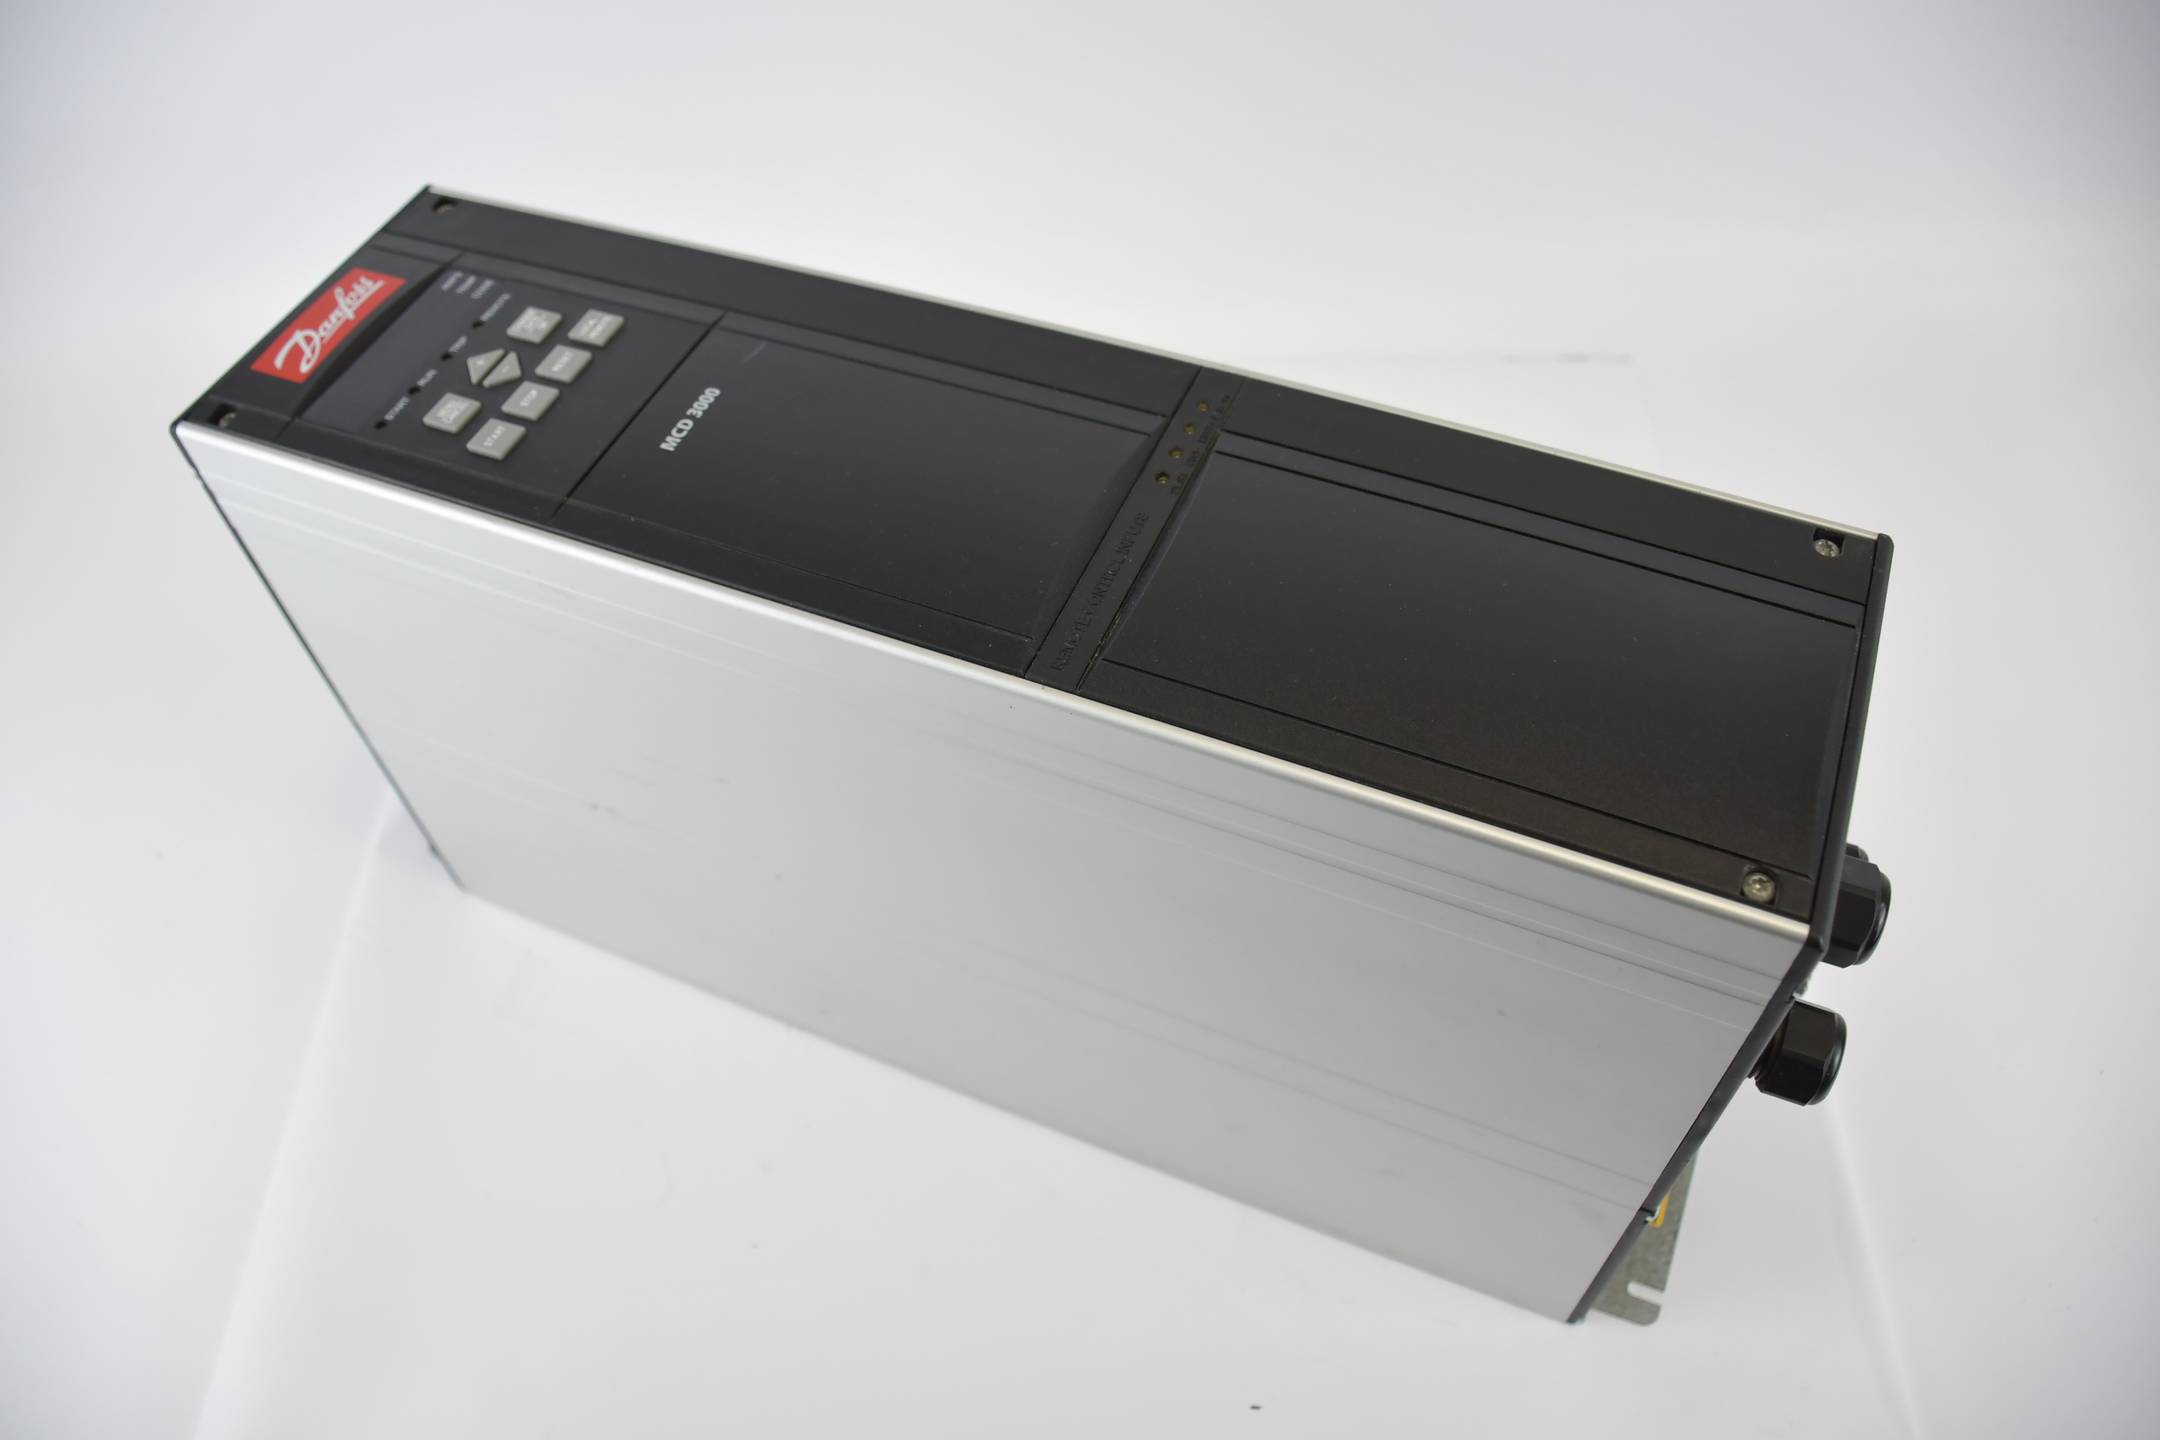 Danfoss VLT® MCD 3000 Softstarter MCD3022-T5-B21-CV4 ( 175G5014 )